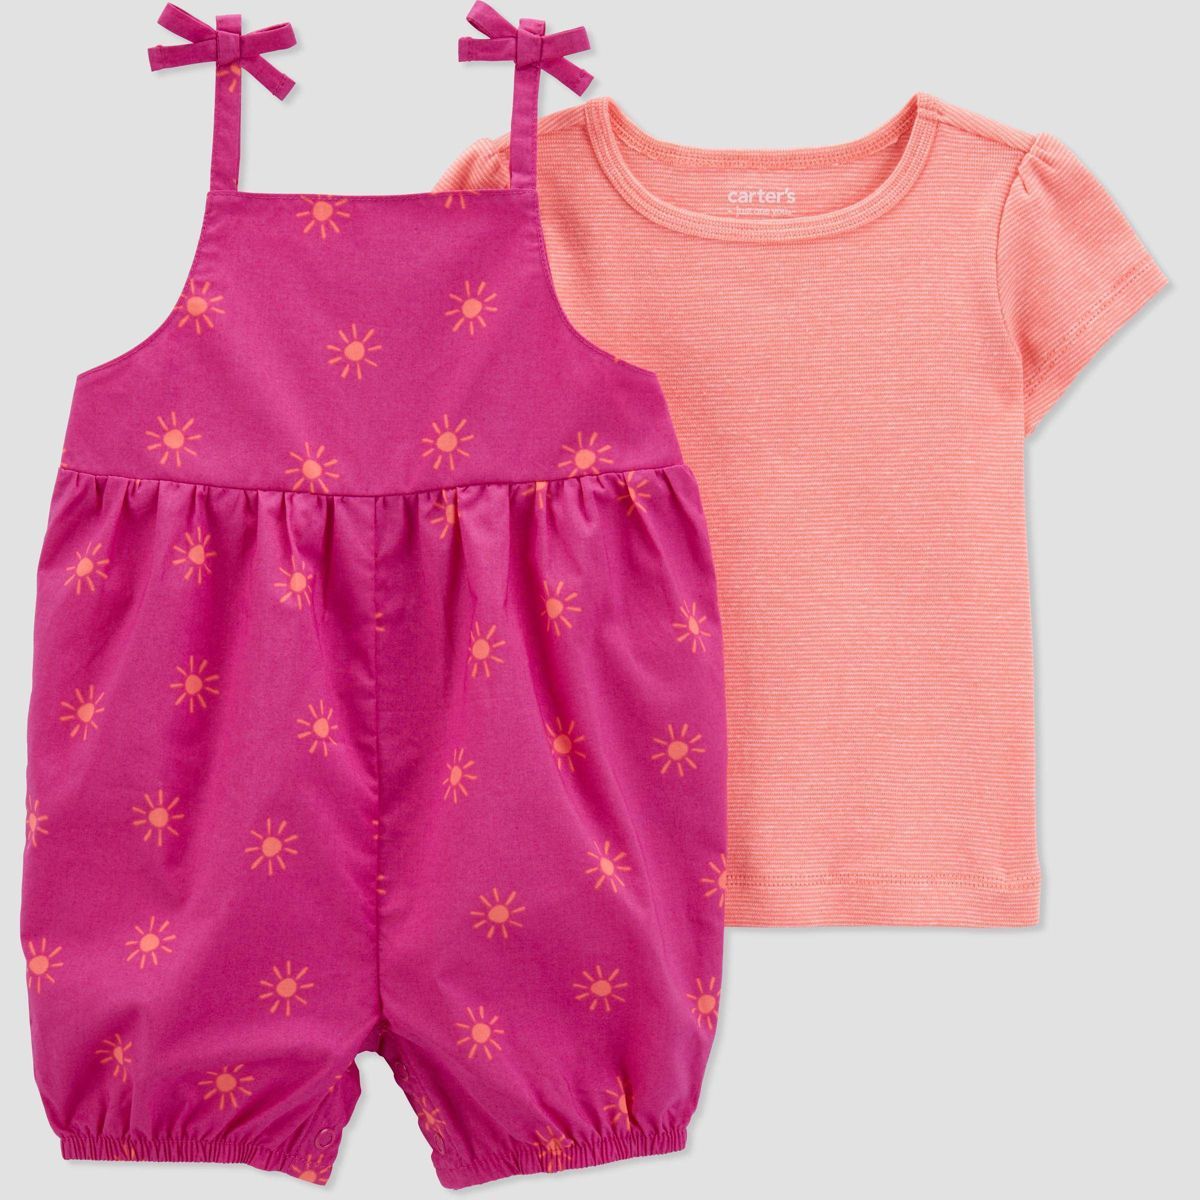 Carter's Just One You® Baby Girls' Sun Undershirt & Bottom Set - Pink/Orange | Target